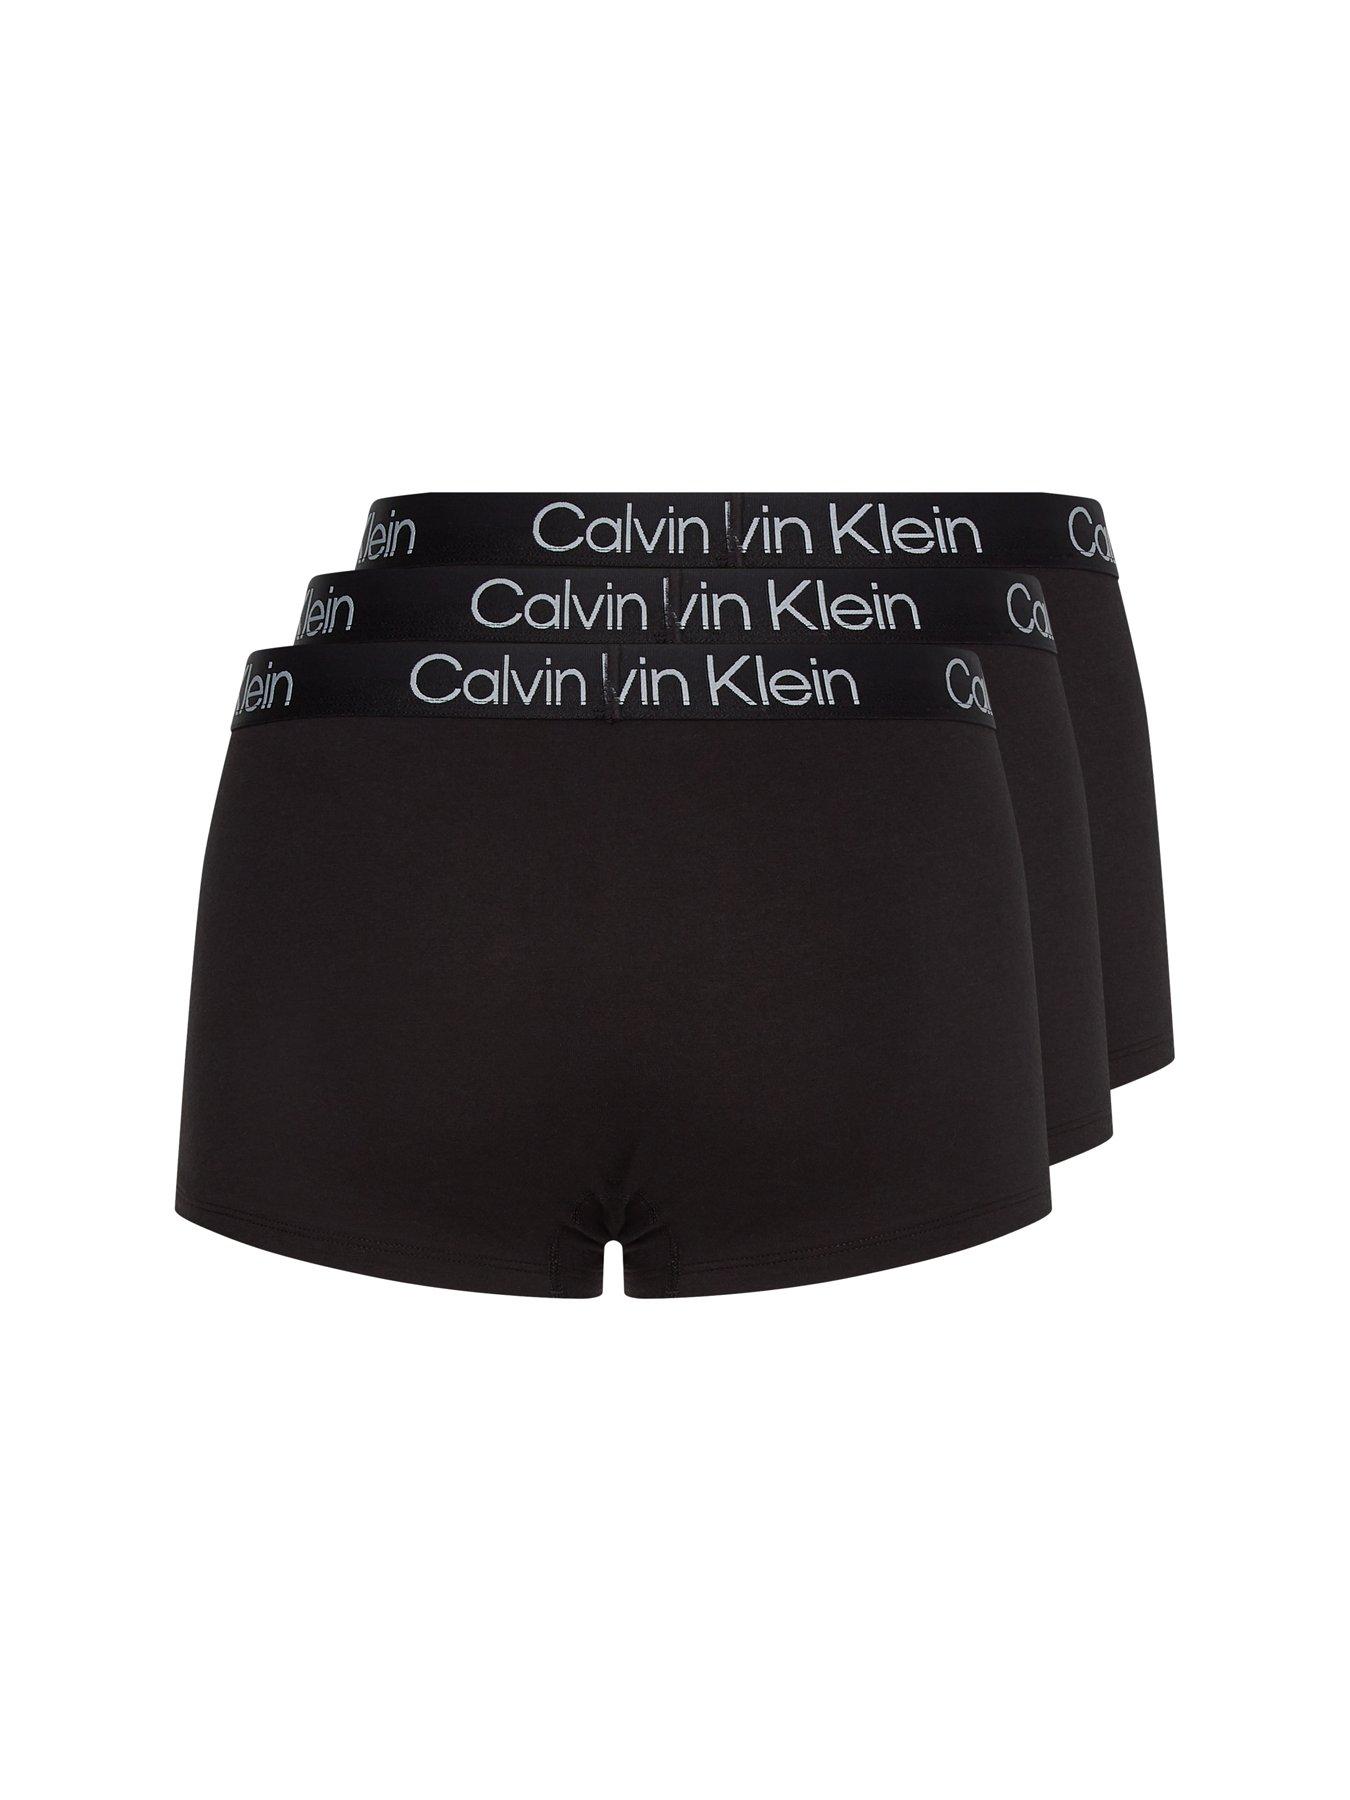 Calvin Klein 3 Pack Boxer Briefs - Black